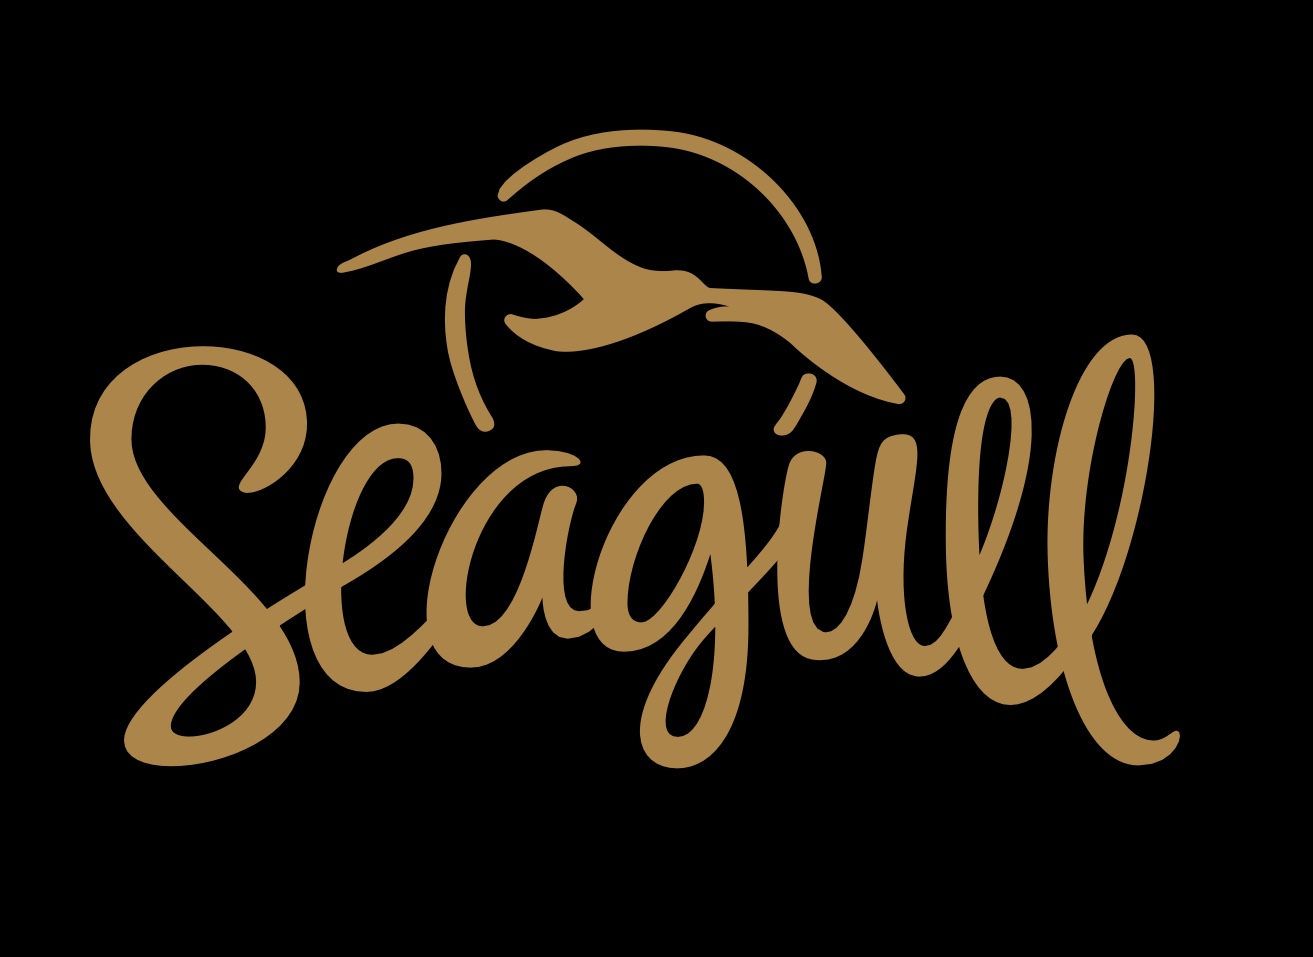 Seagullのアコースティックギターが期間限定で展示中です 札幌ステラプレイス店 店舗情報 島村楽器